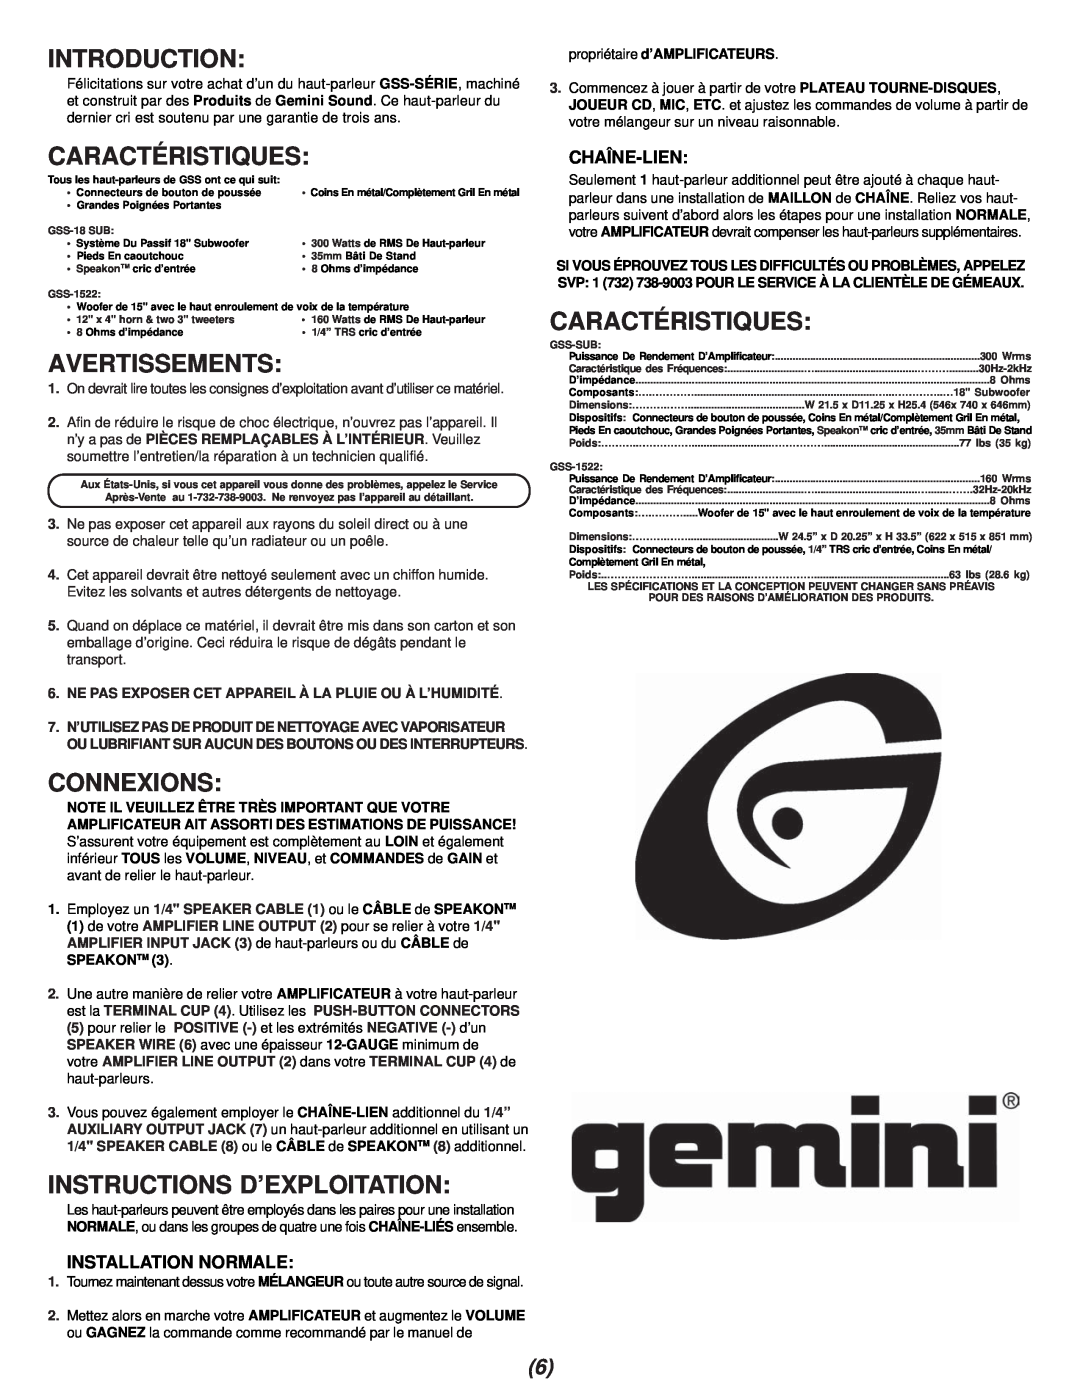 Gemini GSS-18 manual Avertissements, Connexions, Instructions D’Exploitation, Introduction, Caractéristiques, Chaîne-Lien 